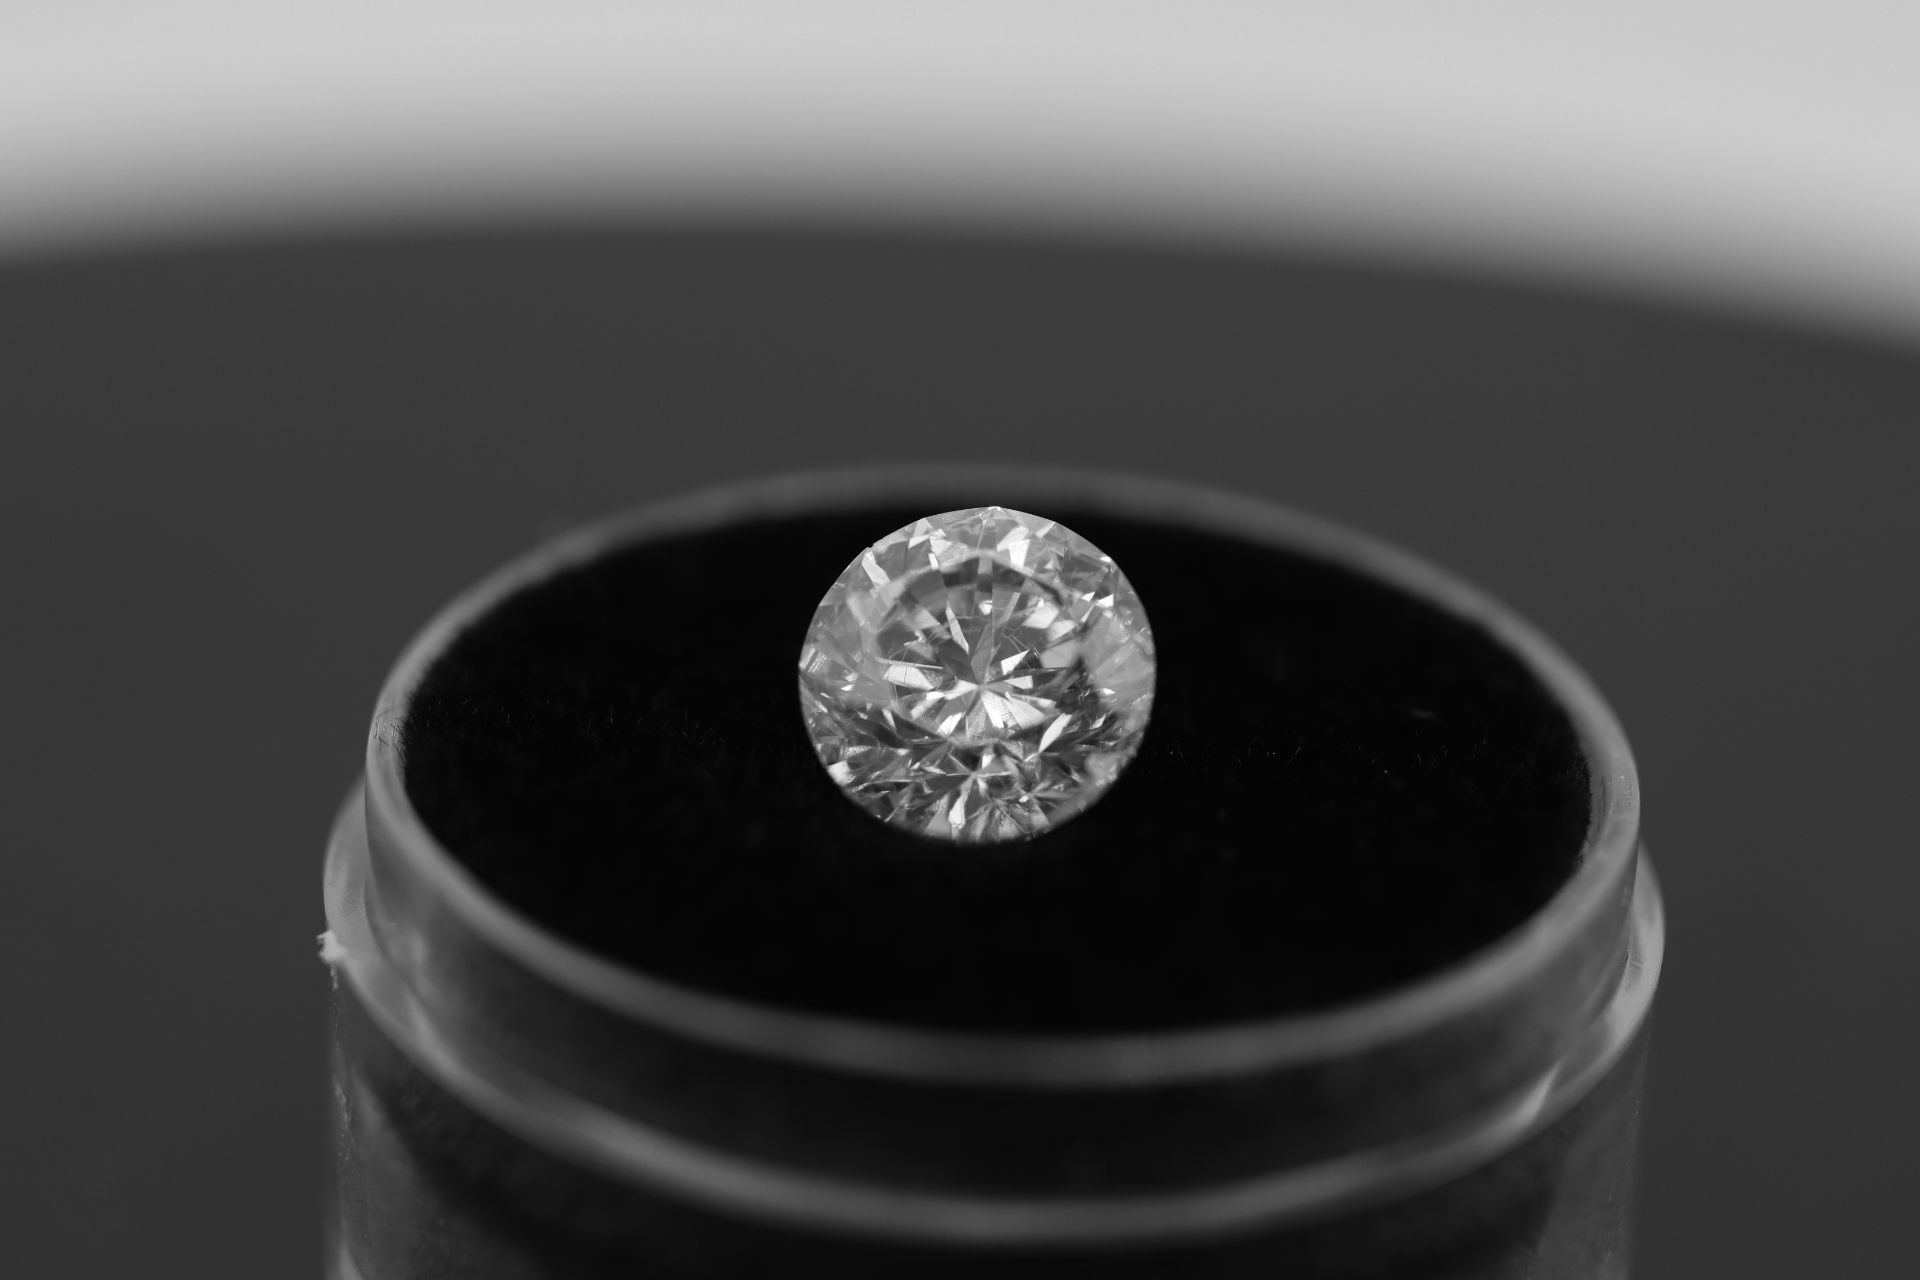 Single - Round Brilliant Cut Natural Diamond 2.07 Carat Colour E Clarity VS2 - DGI 142557706 - Image 6 of 14